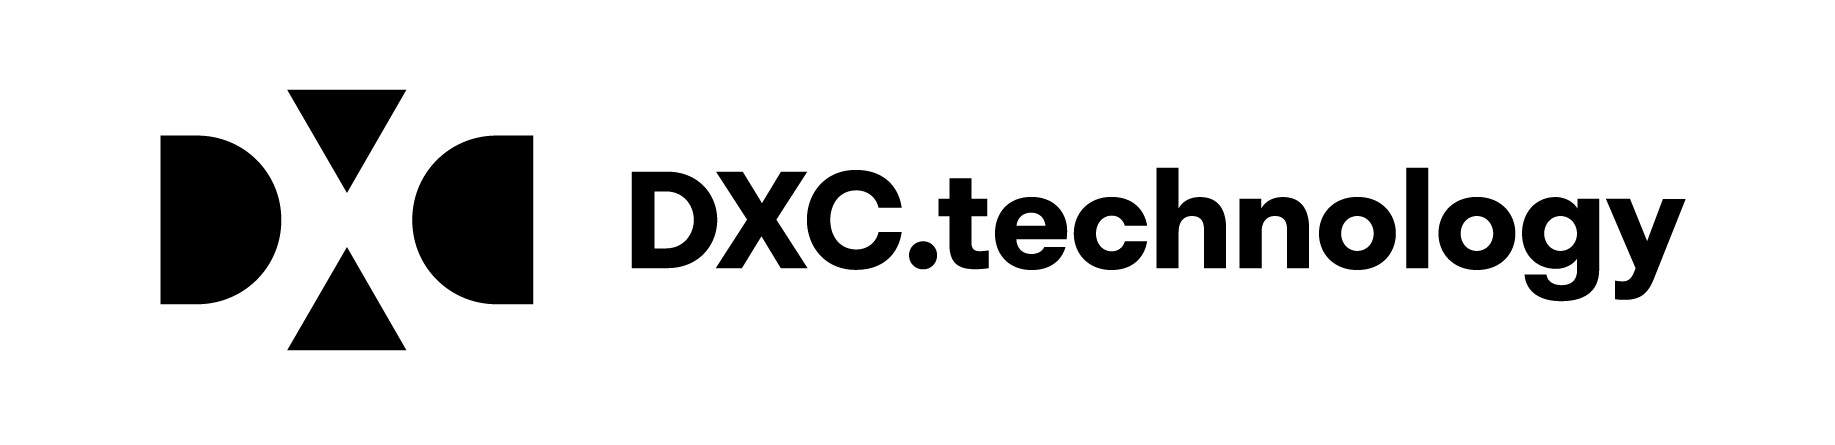 اختيار دي إكس سي تكنولوجي ضمن قائمة تومسون رويترز لأفضل مئة شركة عالمية رائدة في مجال التكنولوجي